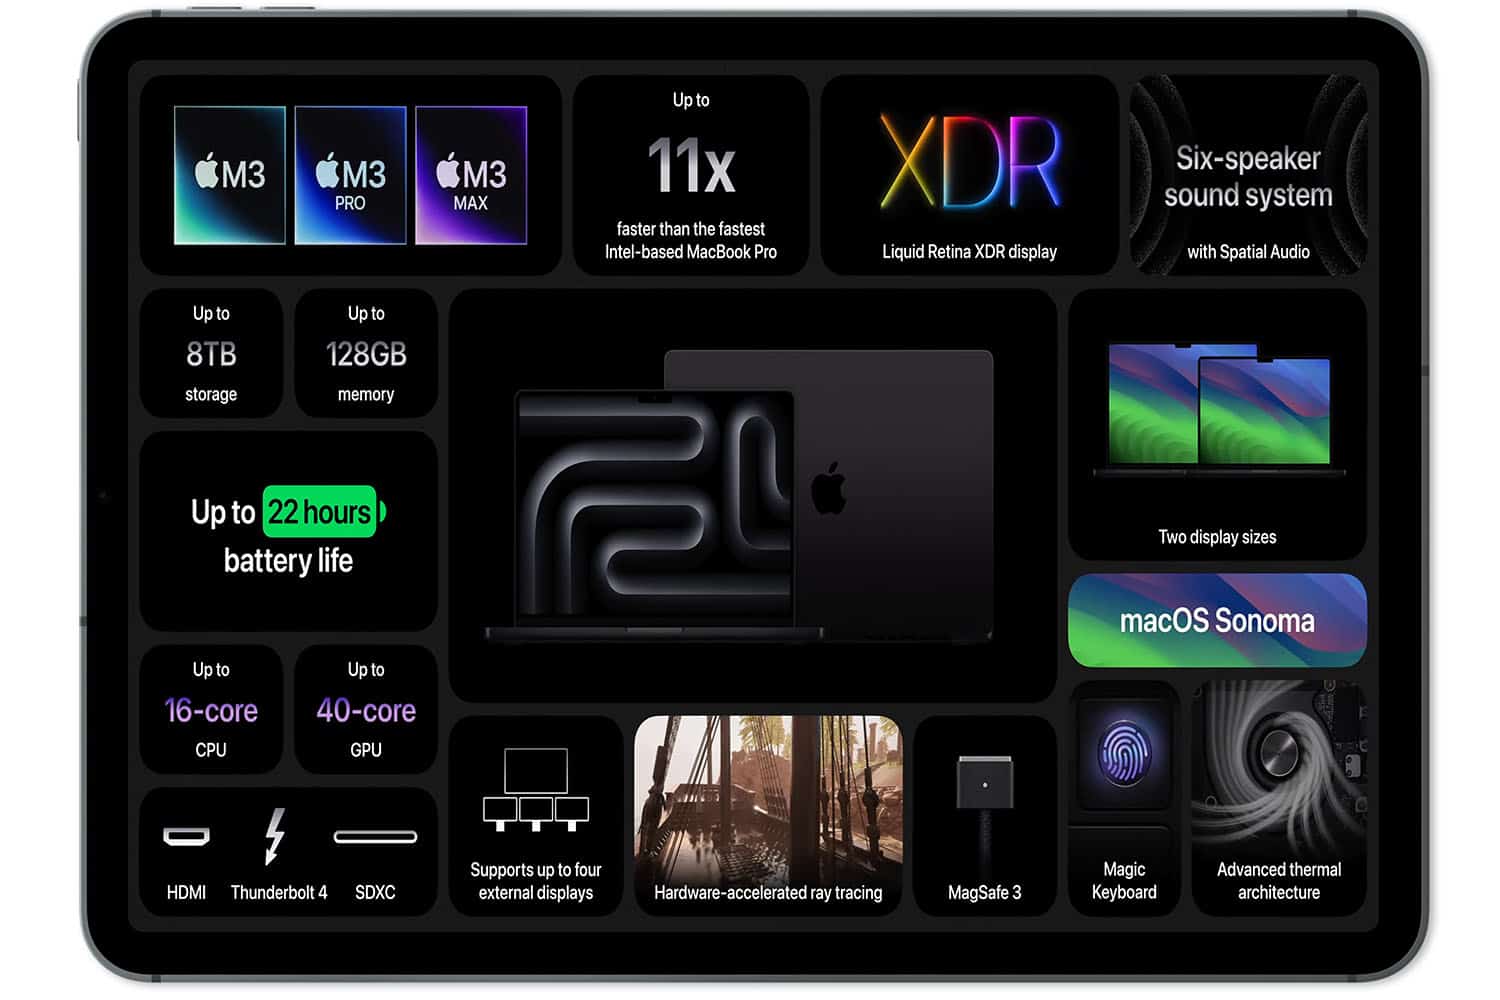 Apple stellt die neue Farbe Space Black für das M3 Pro und M3 Max MacBook Pro vor